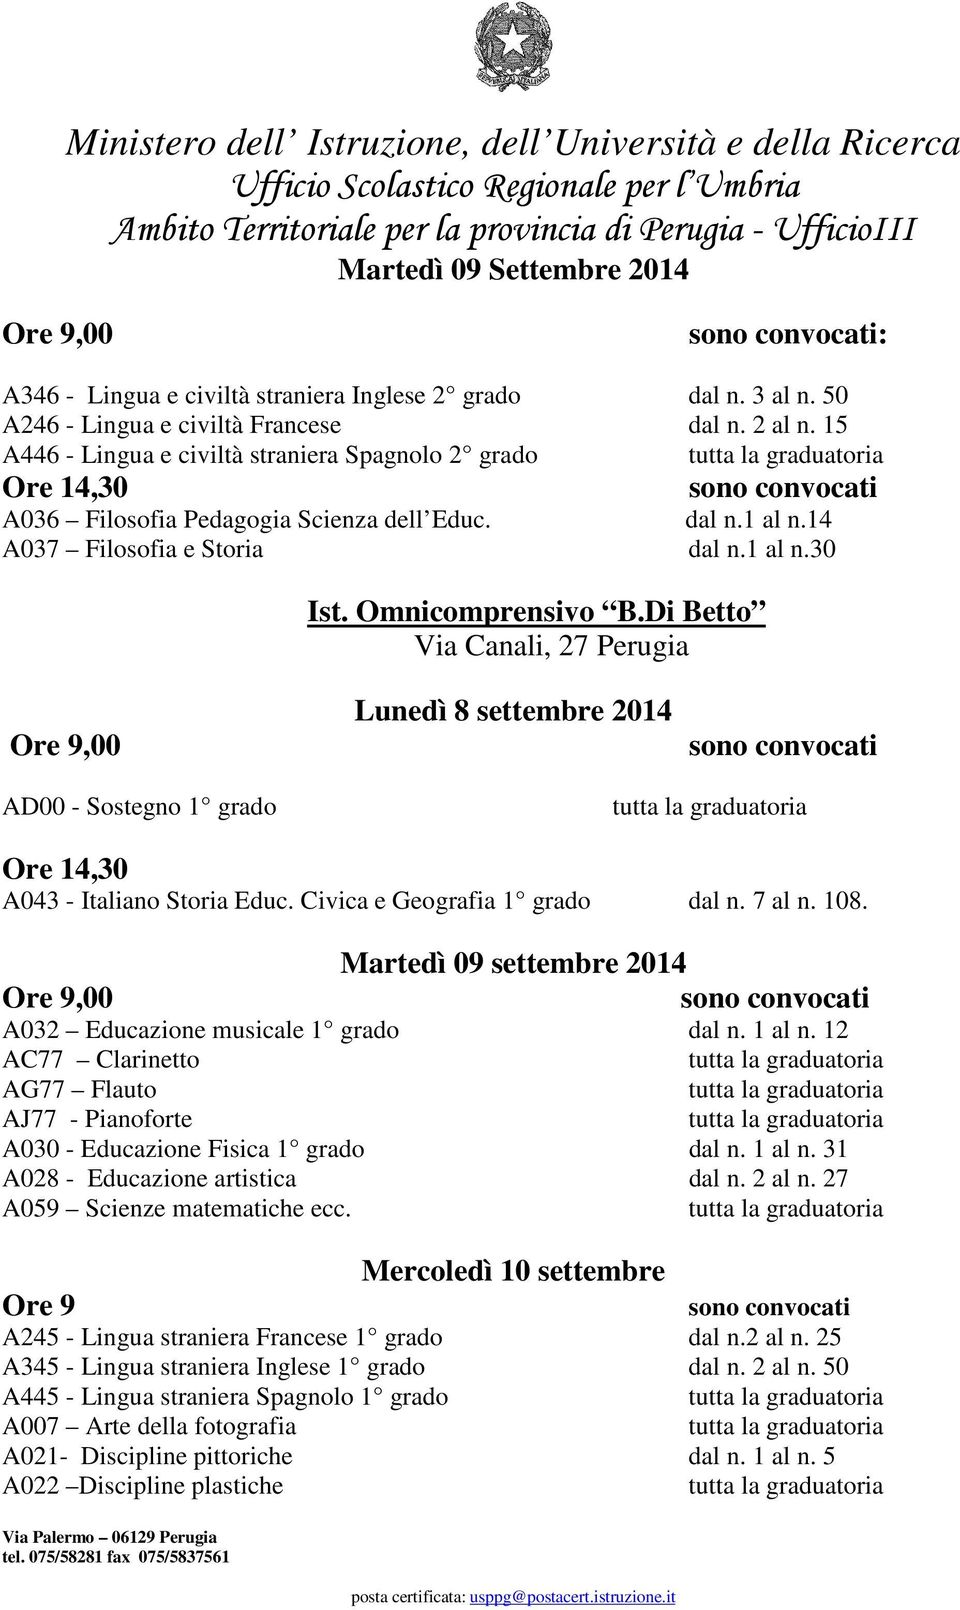 Di Betto Via Canali, 27 Perugia Lunedì 8 settembre 2014 AD00 - Sostegno 1 grado A043 - Italiano Storia Educ. Civica e Geografia 1 grado dal n. 7 al n. 108.